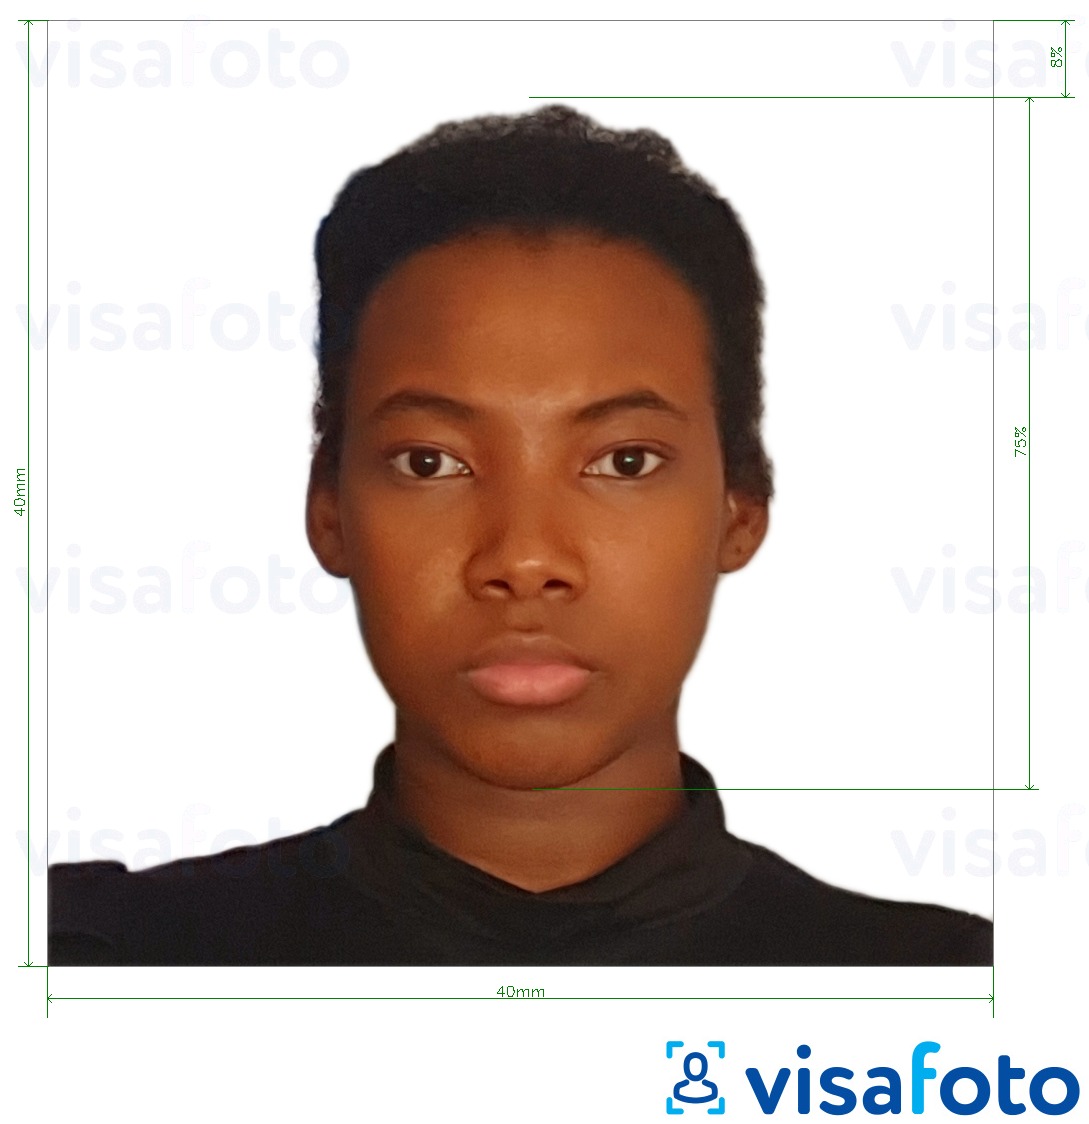  Kameruni viisa 4x4 cm (40x40 mm) fotonäidis koos täpse infoga mõõtude kohta.